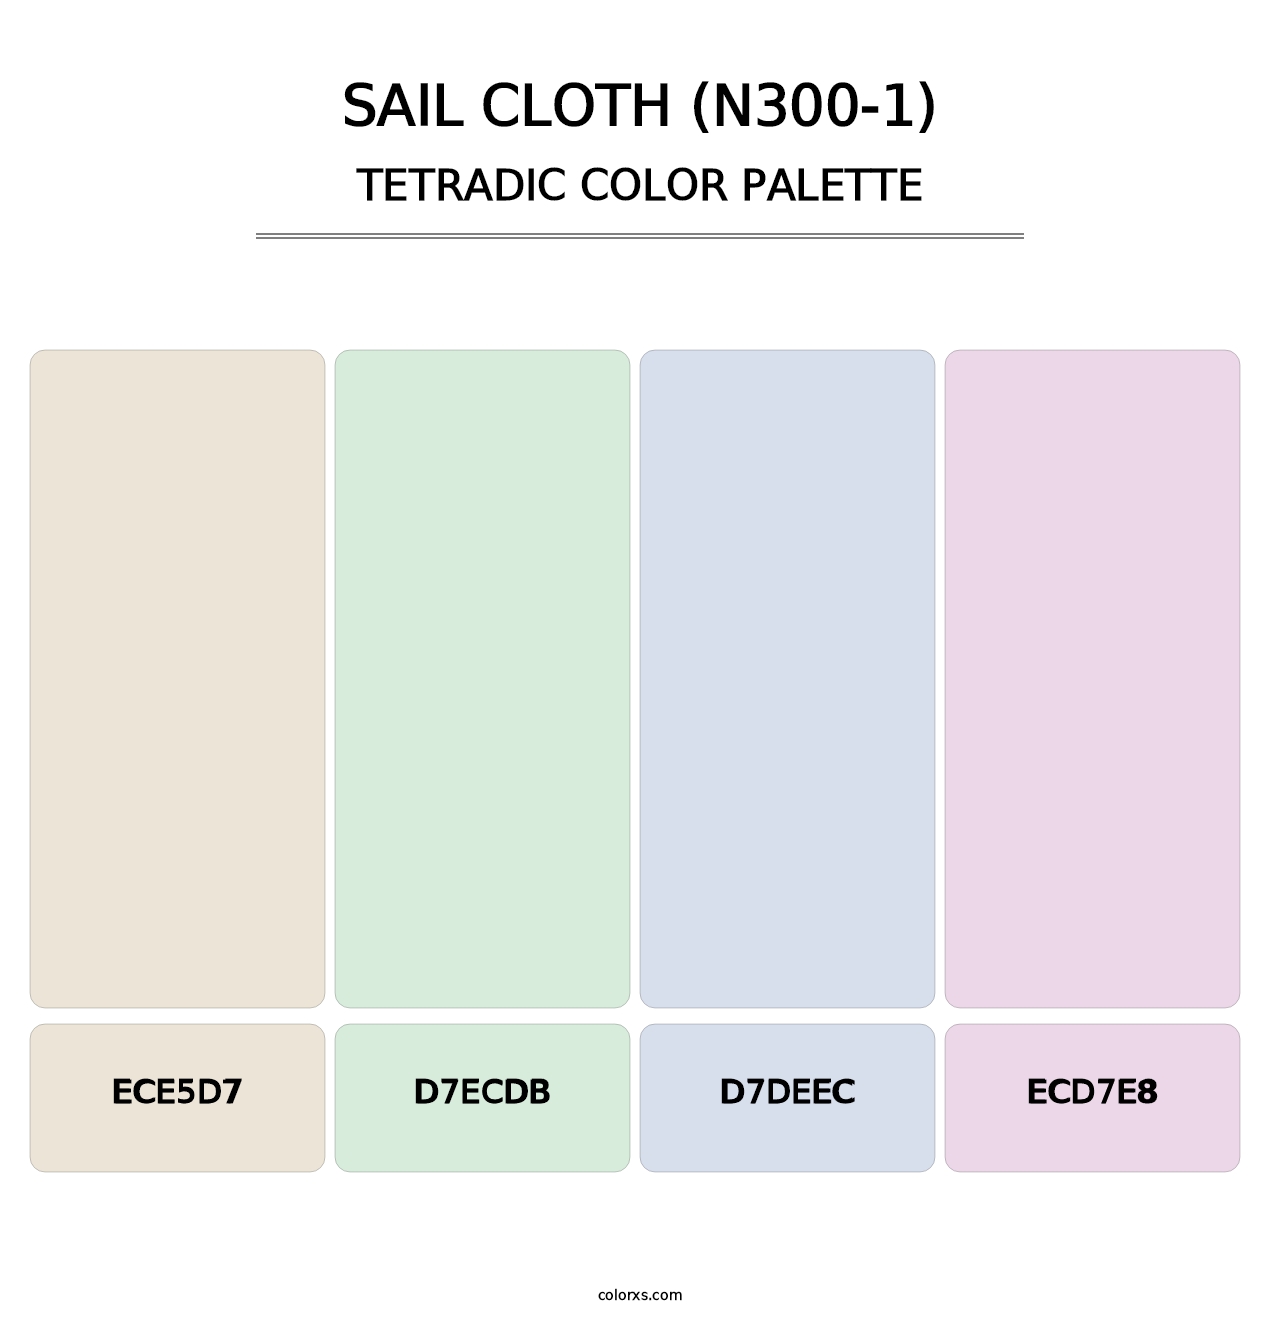 Sail Cloth (N300-1) - Tetradic Color Palette